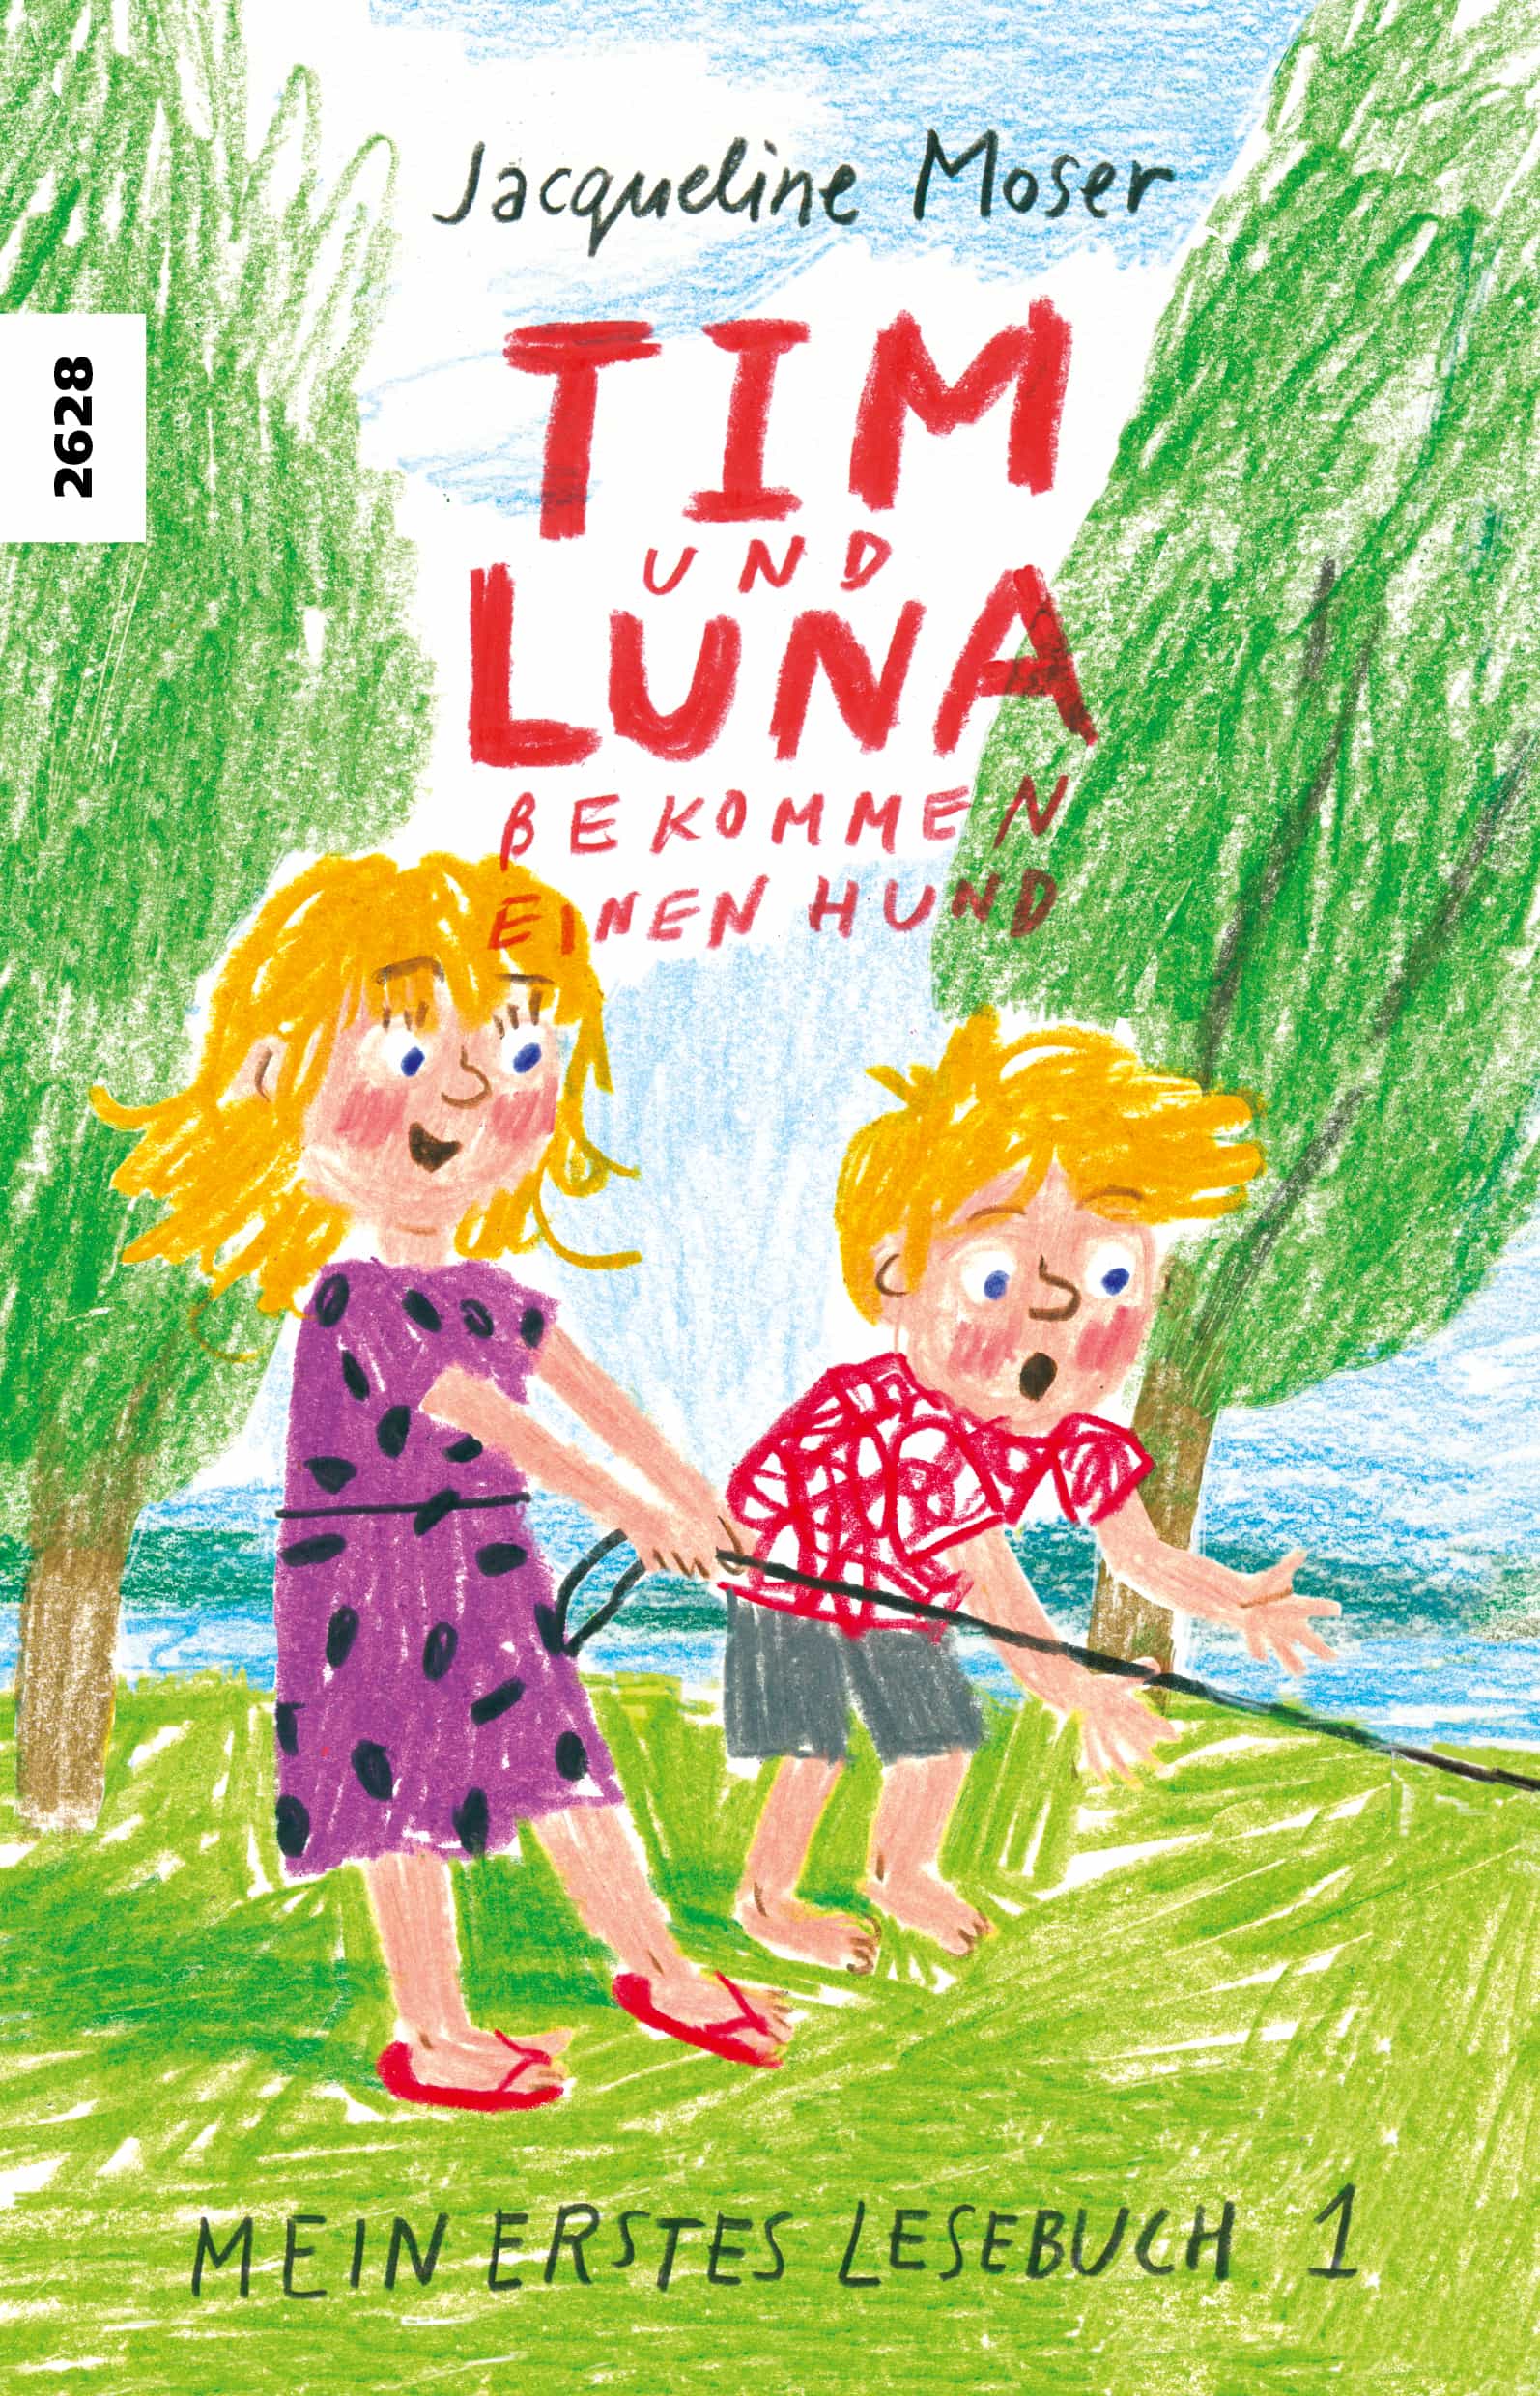 Tim und Luna bekommen einen Hund, ein Erstlesebuch von Jacqueline Moser, Illustration von Anete Melece, SJW Verlag, Lesebuch